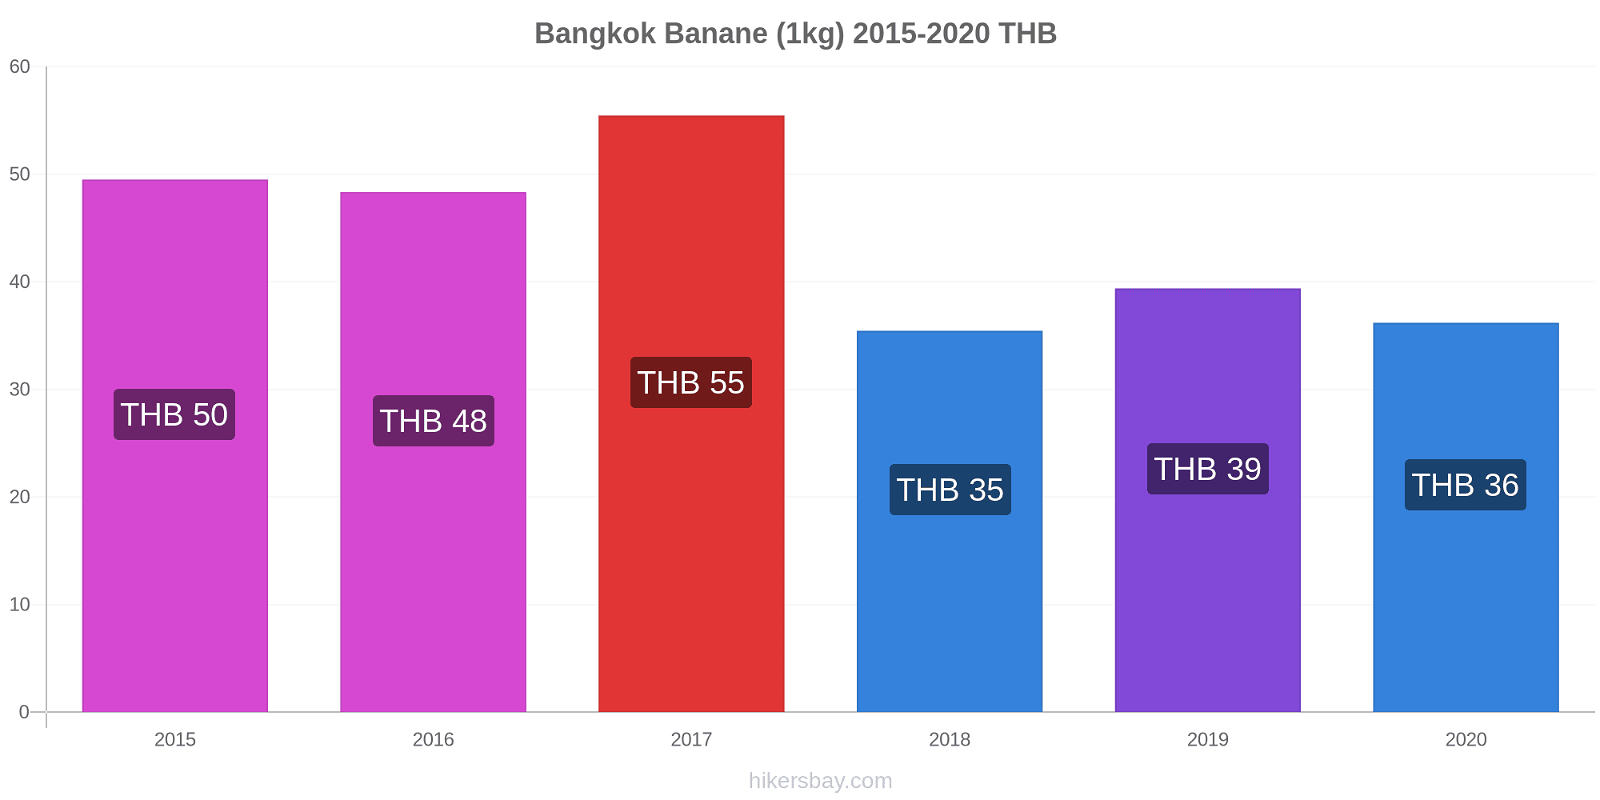 Bangkok variazioni di prezzo Banana (1kg) hikersbay.com